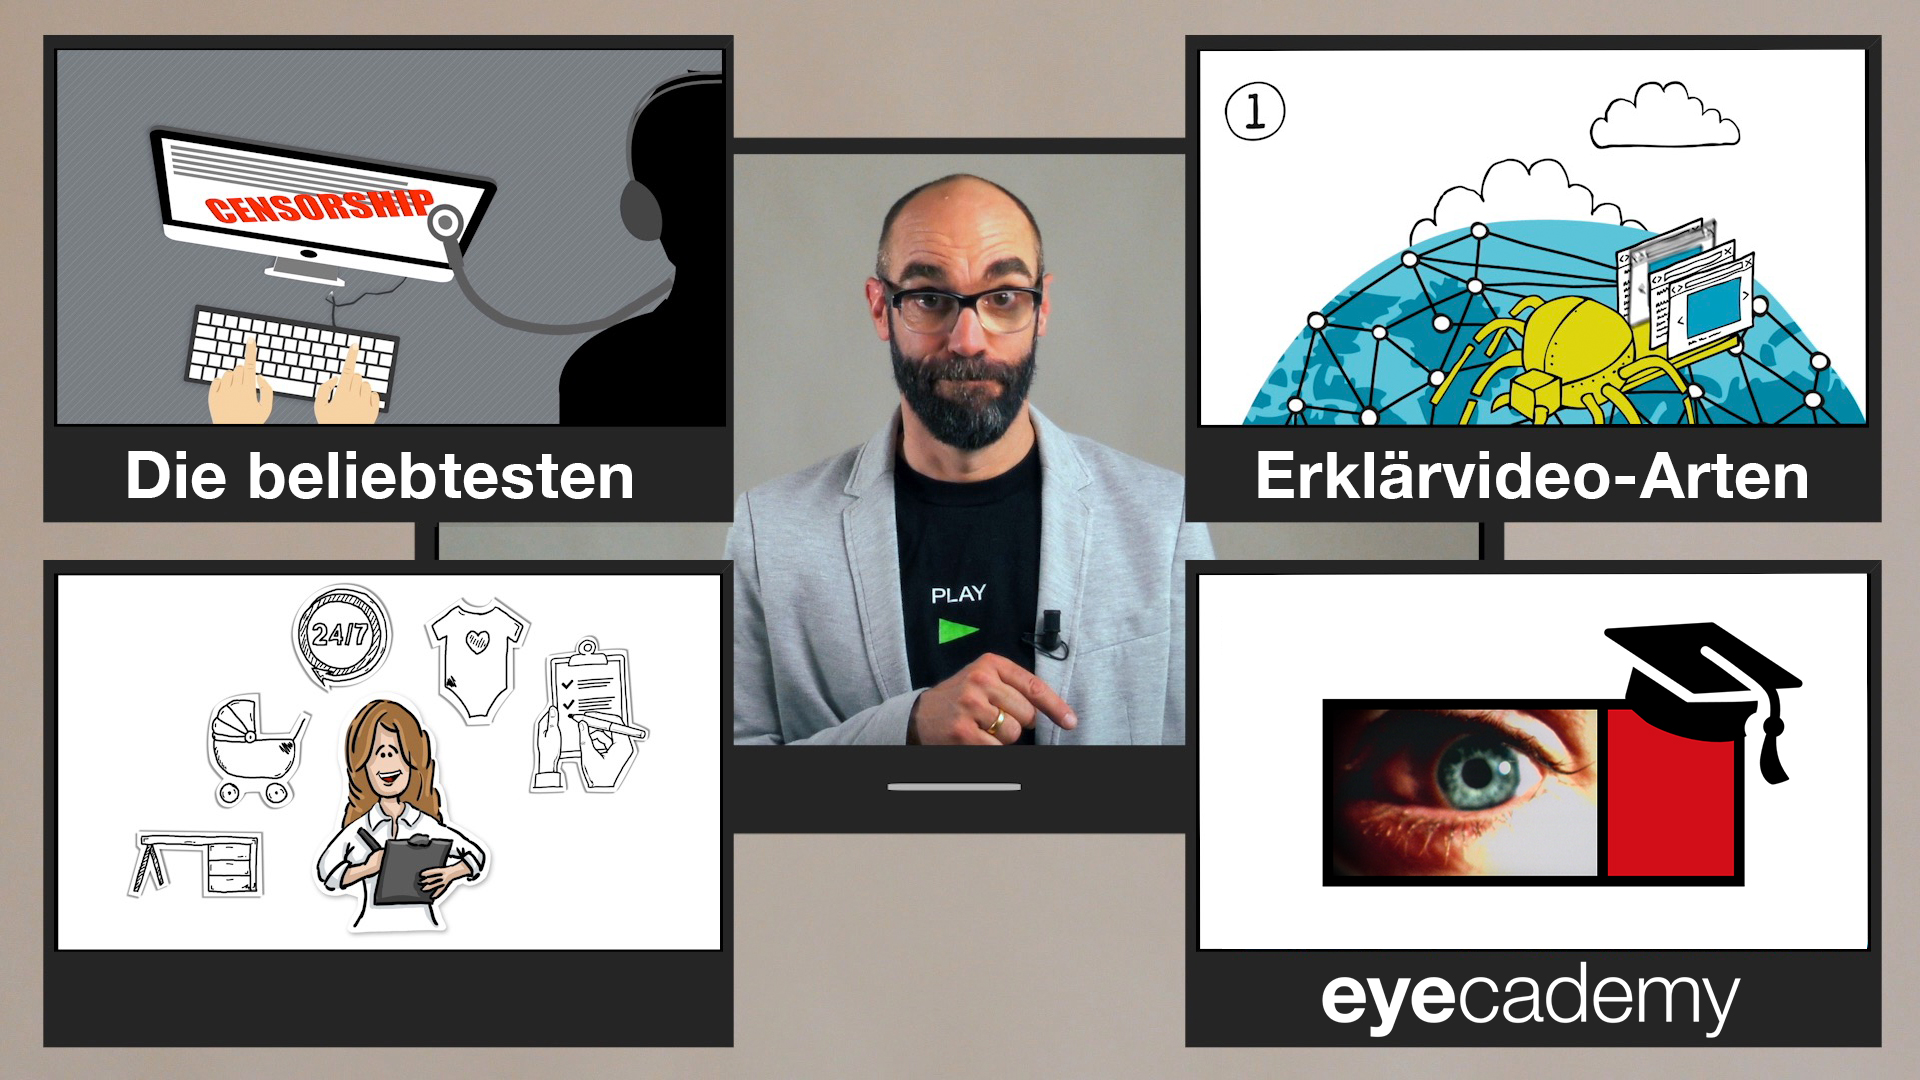 Video-Thumbnail des Erklärvideos: Moderator umgeben von 3 Erklärvideo-Standbildern und dem eyecademy-Logo